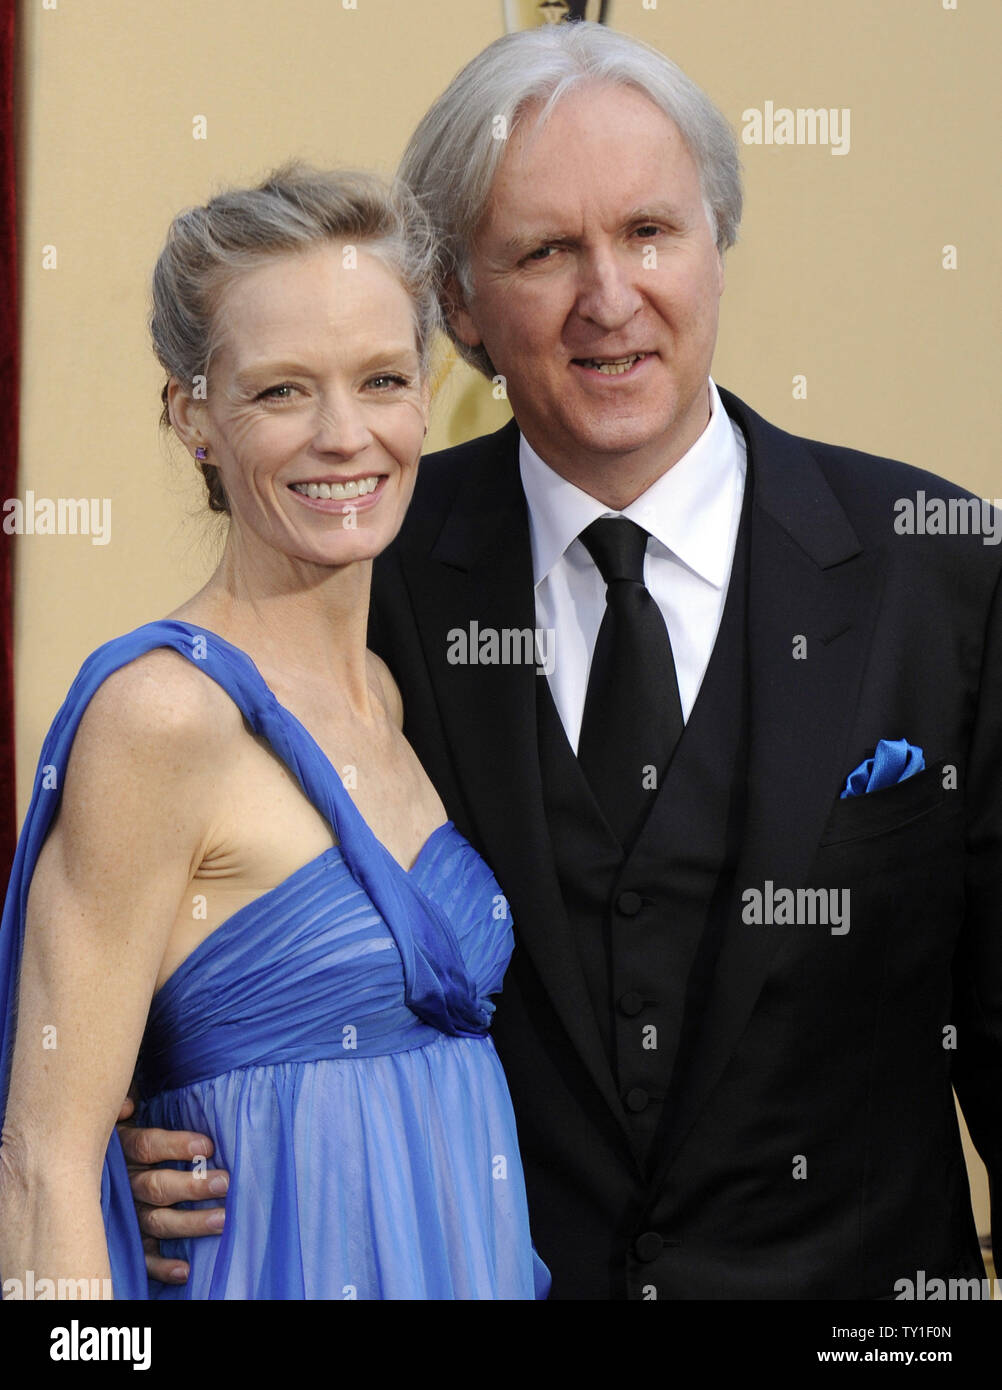 James Cameron, Regisseur von "Avatar", und seine Frau Suzy Amis, Ankunft auf dem roten Teppich an der 82nd Academy Awards in Hollywood am 7. März 2010. "Avatar" heute Abend für 9 Oscars nominiert ist. UPI/Phil McCarten Stockfoto